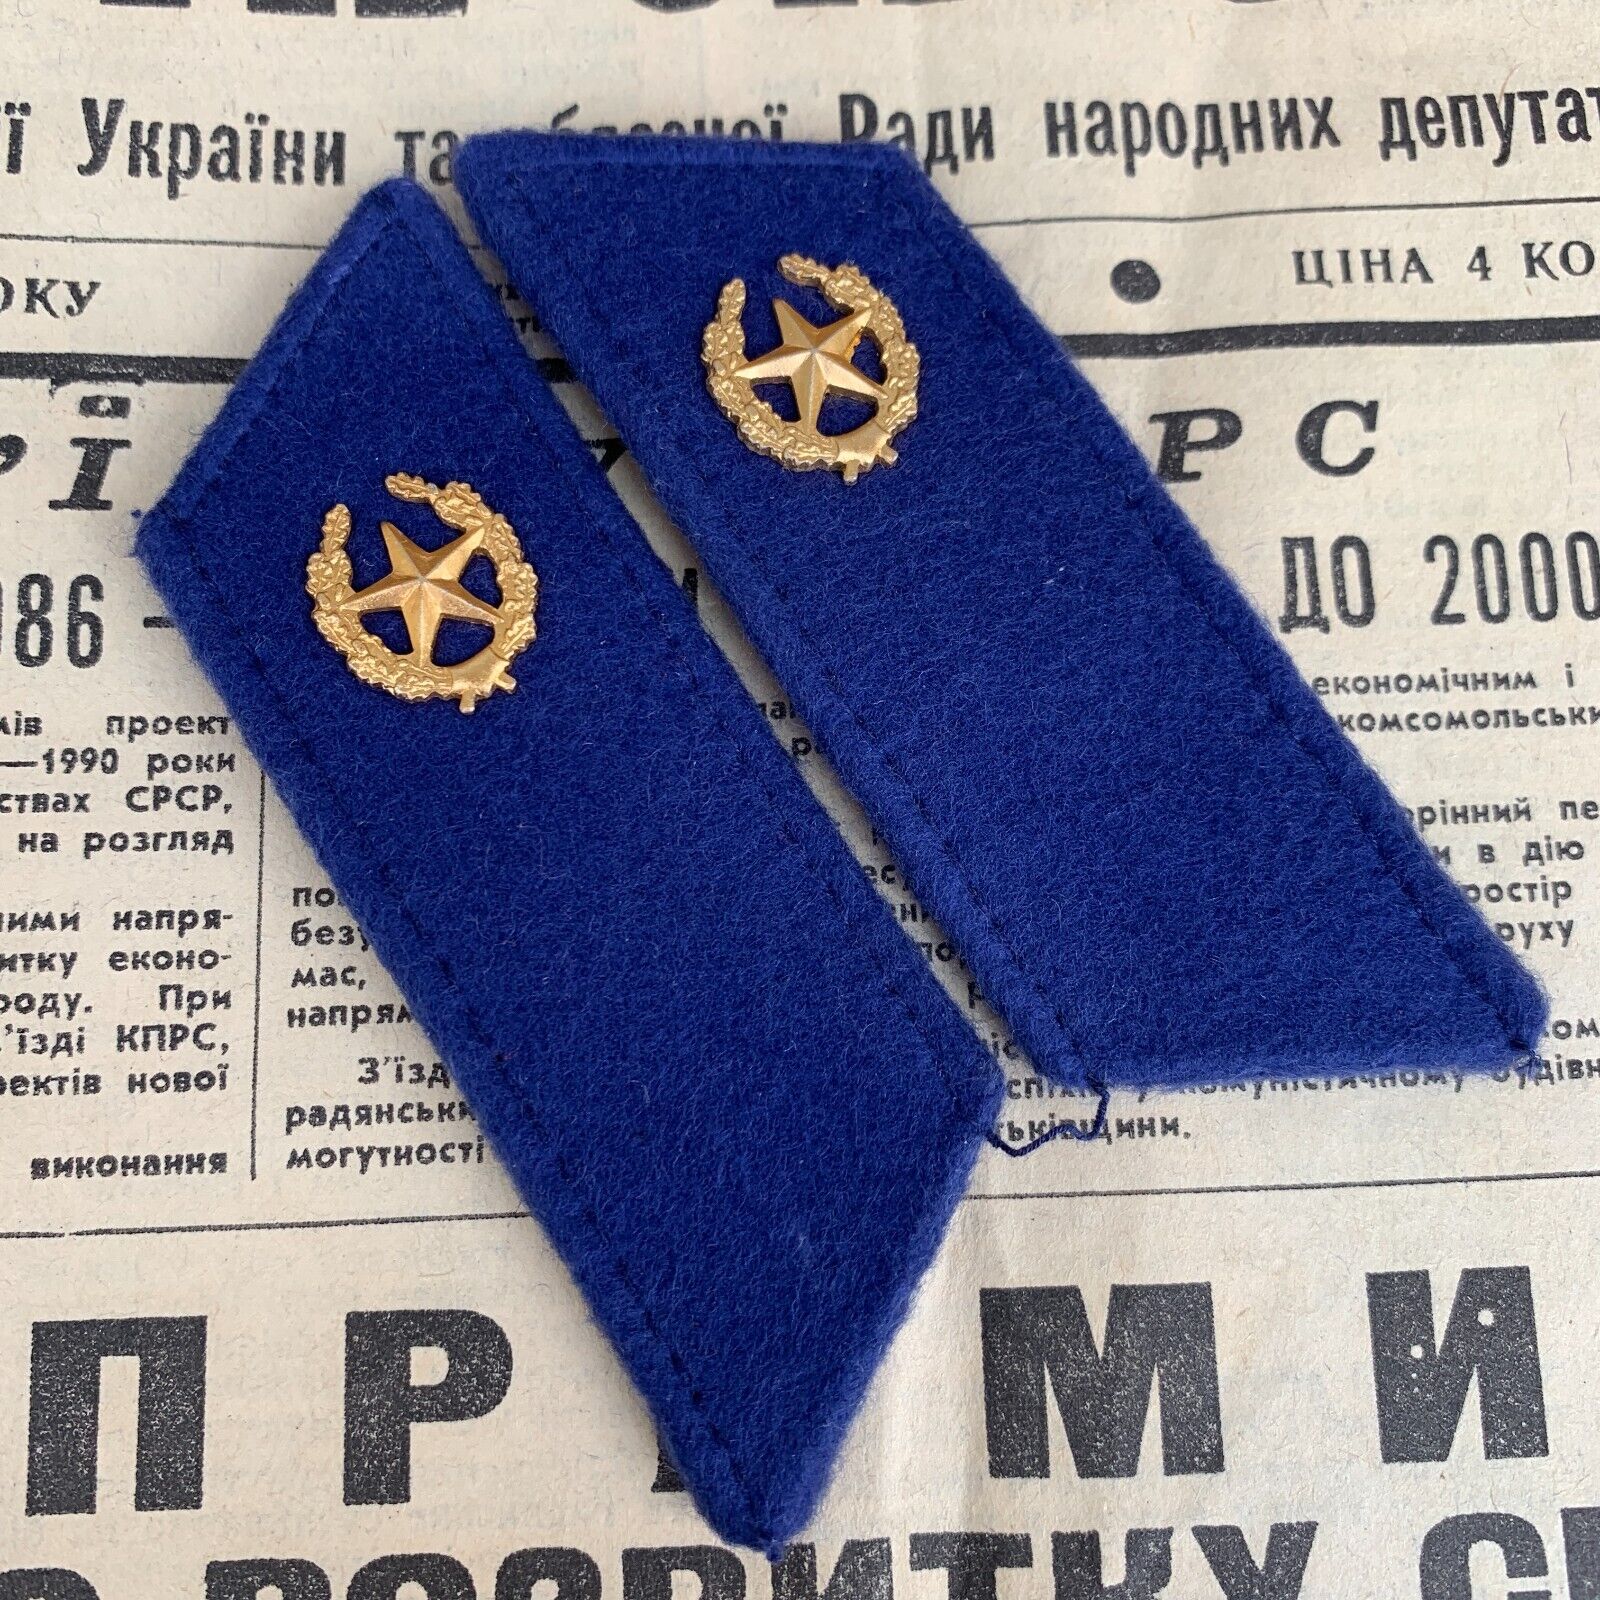 Vintage 1970-80s soviet army kgb buttonholes.